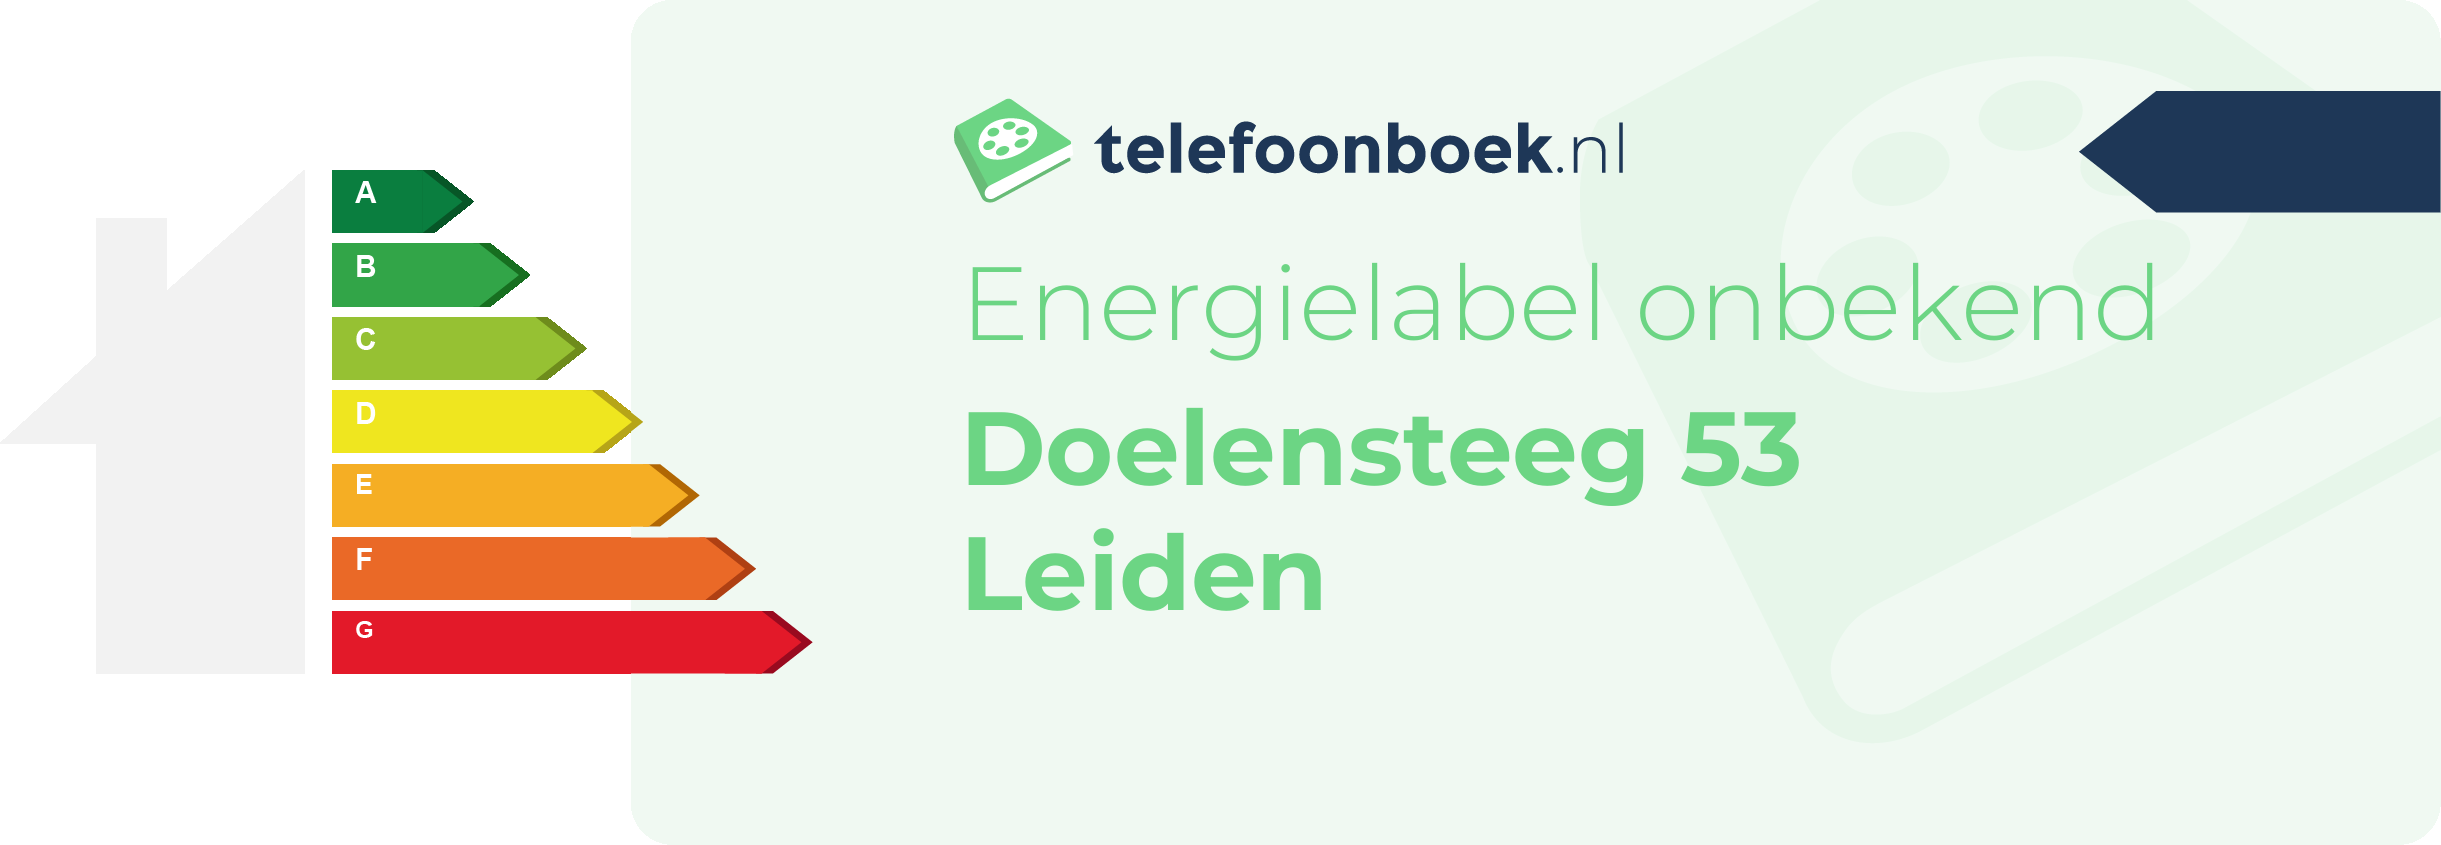 Energielabel Doelensteeg 53 Leiden